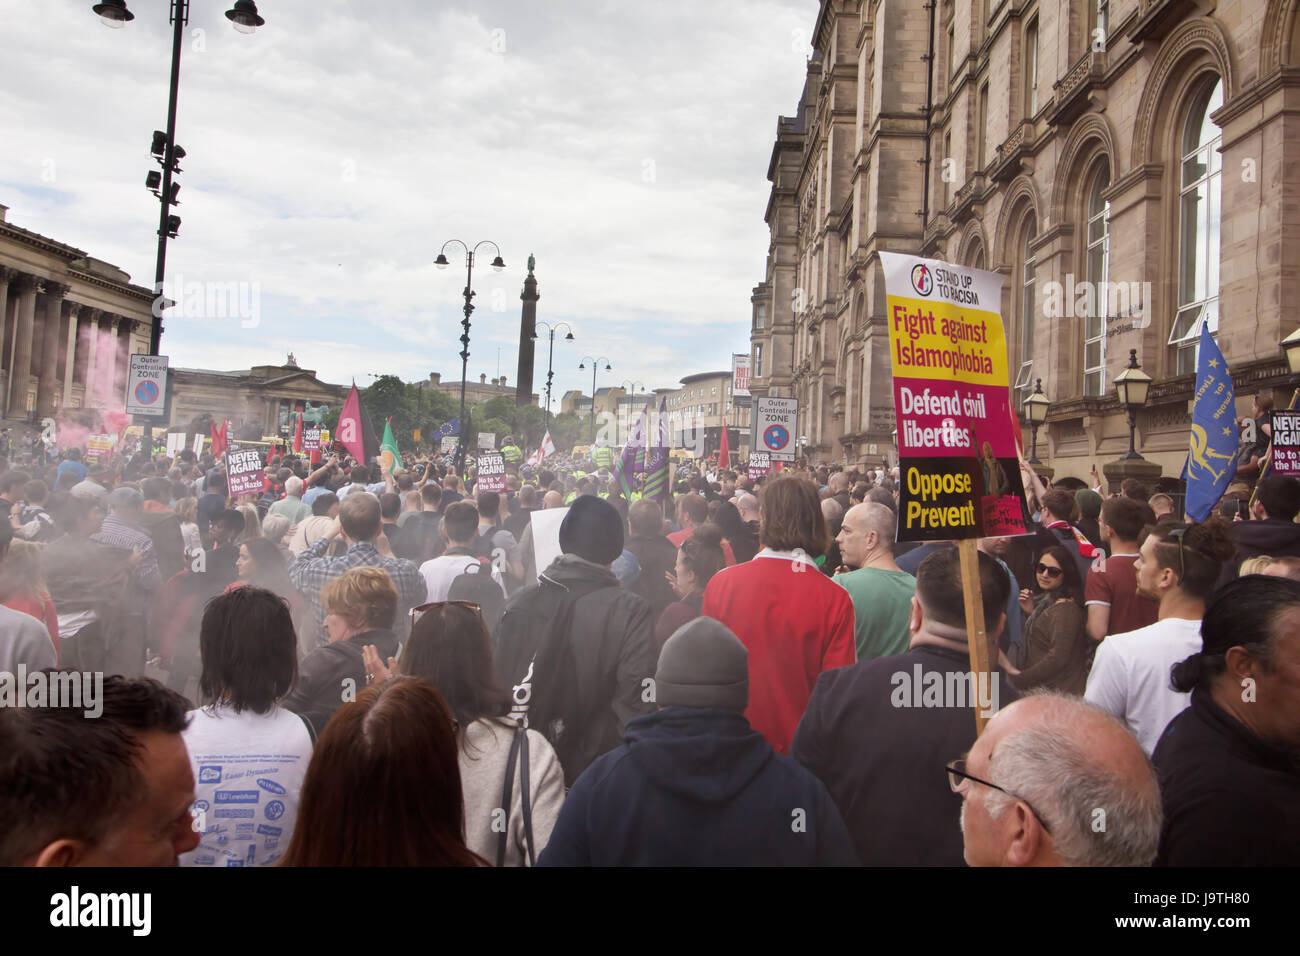 Liverpool Regno Unito, 3 giugno 2017. L'EDL sostenitori e anti- sostenitori fascista si scontrano in Liverpool Merseyside Regno Unito. Credito: Ken Biggs/Alamy Live News. Foto Stock